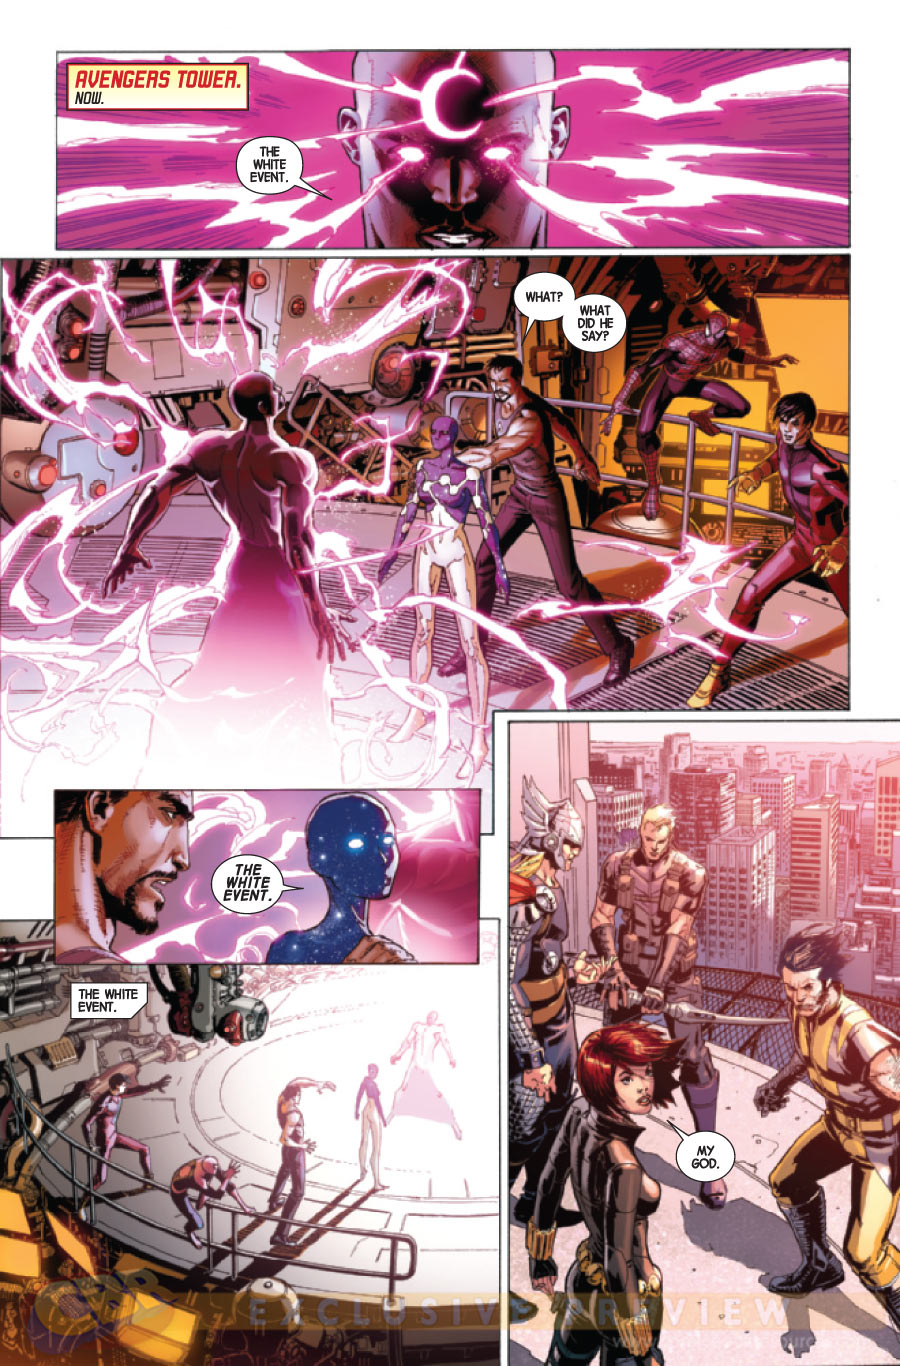 Preview de Avengers #7 - Vingadores - Jonathan Hickman - Blog Farofeiros